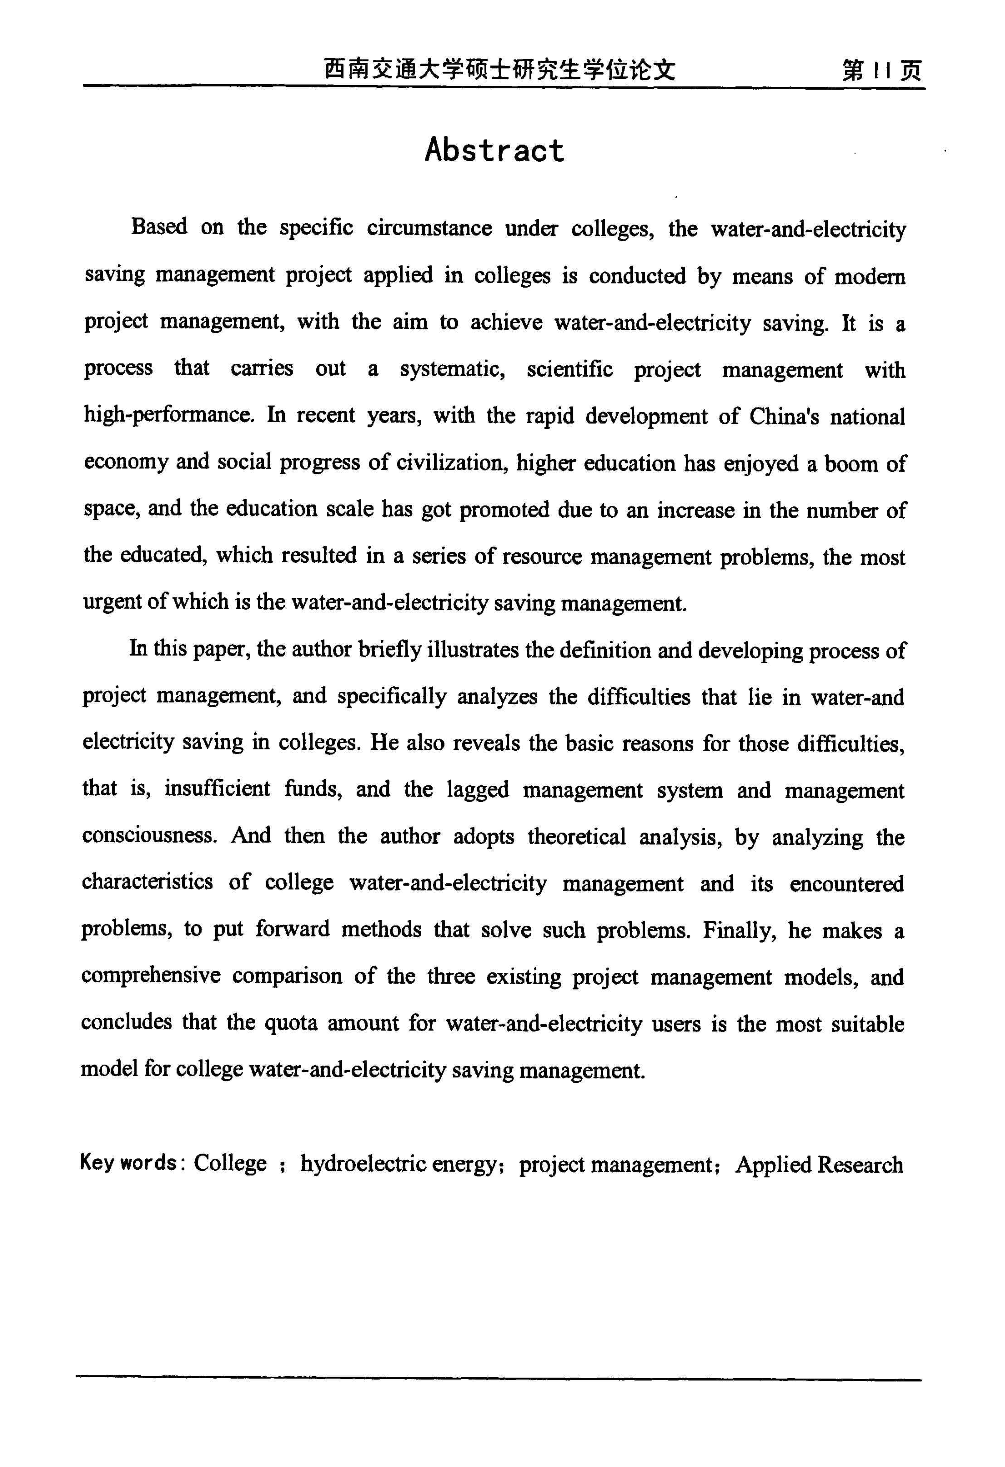 高校水电节能项目管理模式的应用研究(1)-图一